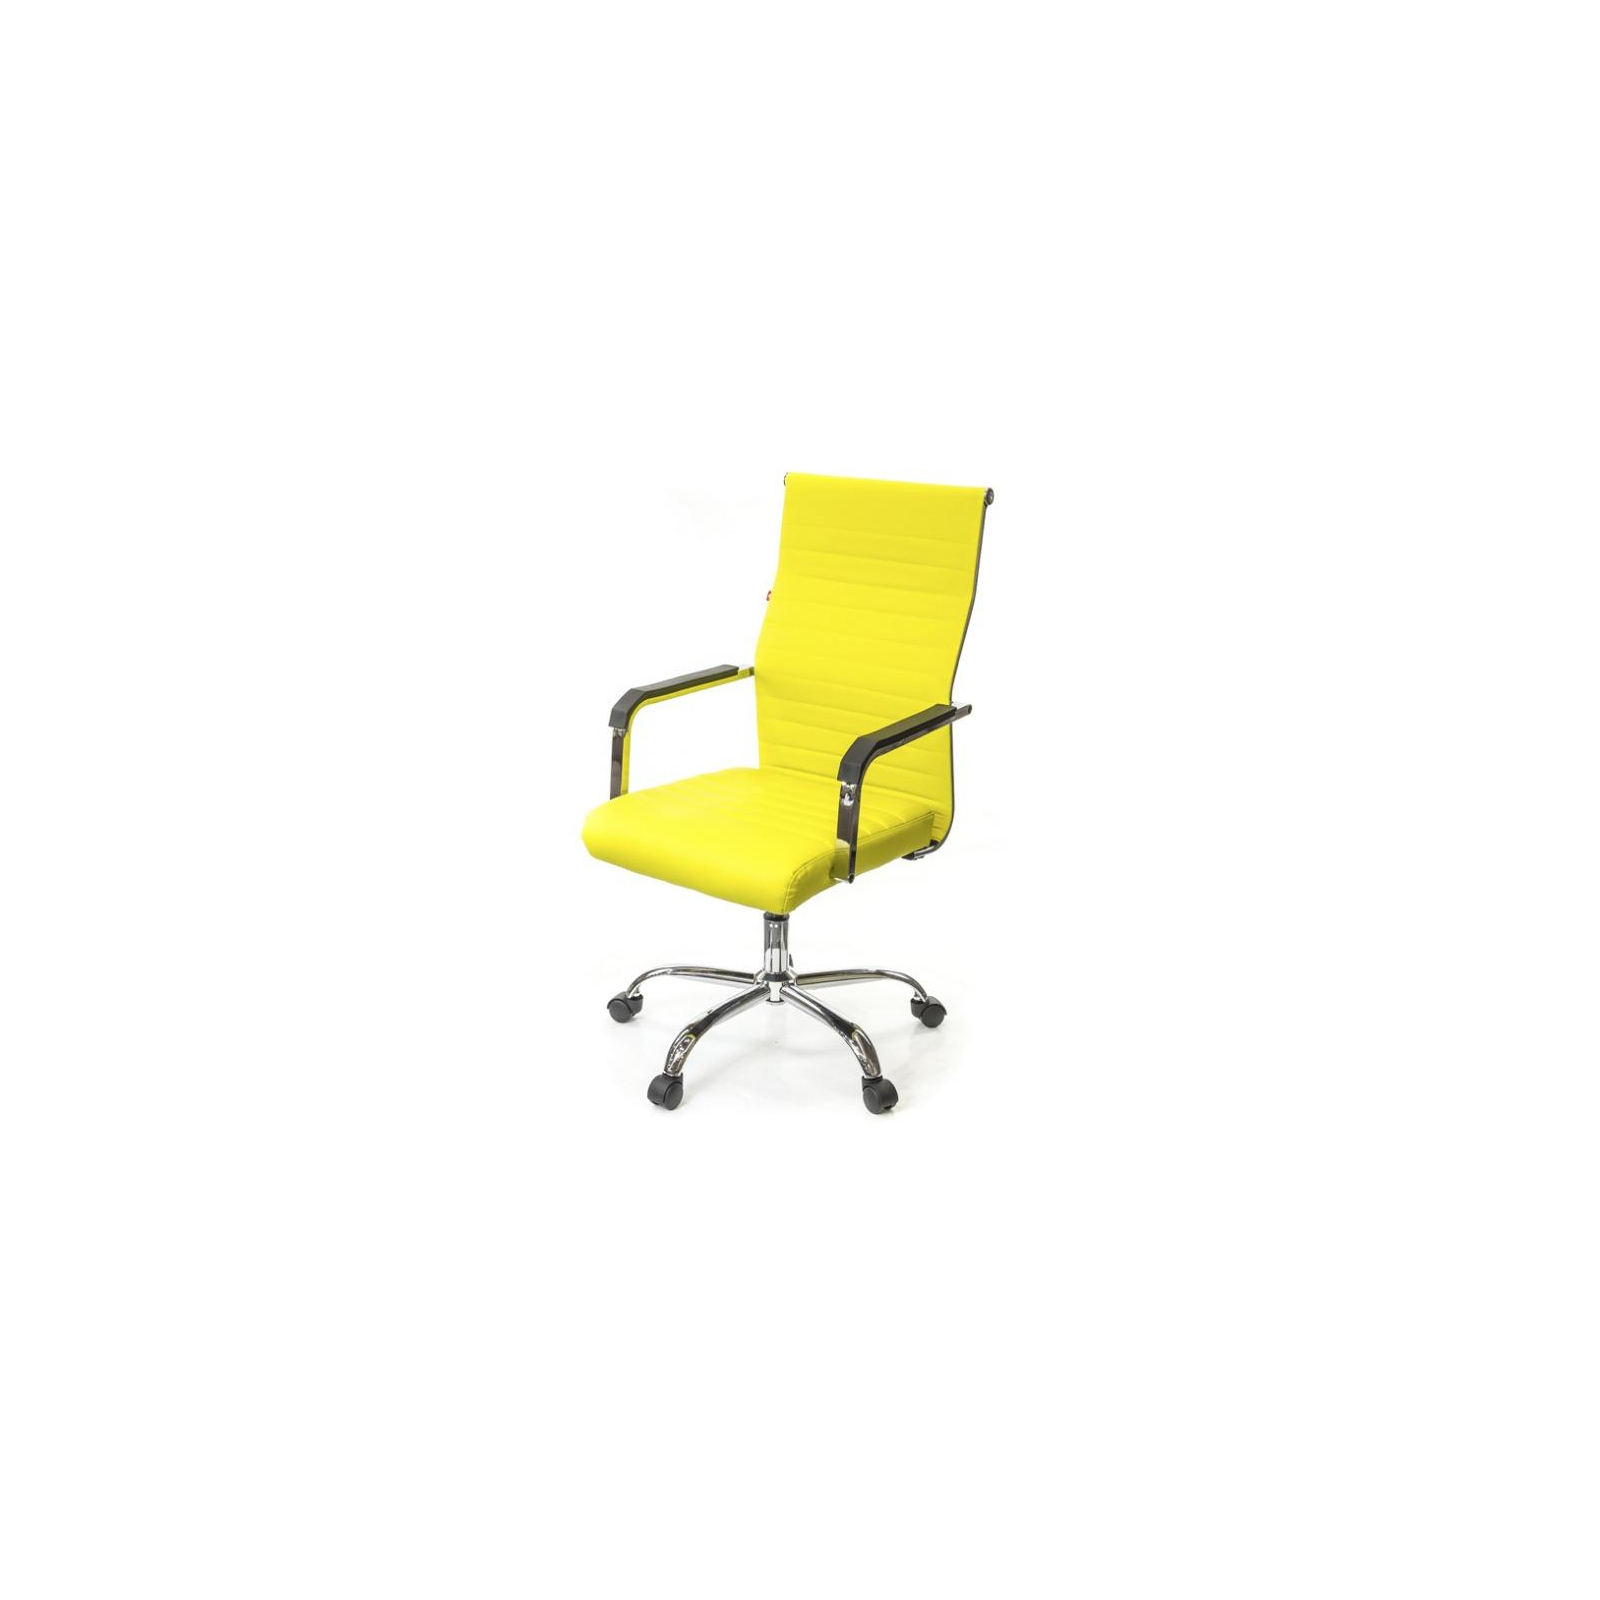 Офисное кресло Аклас Кап FX СН TILT Черное (09697)